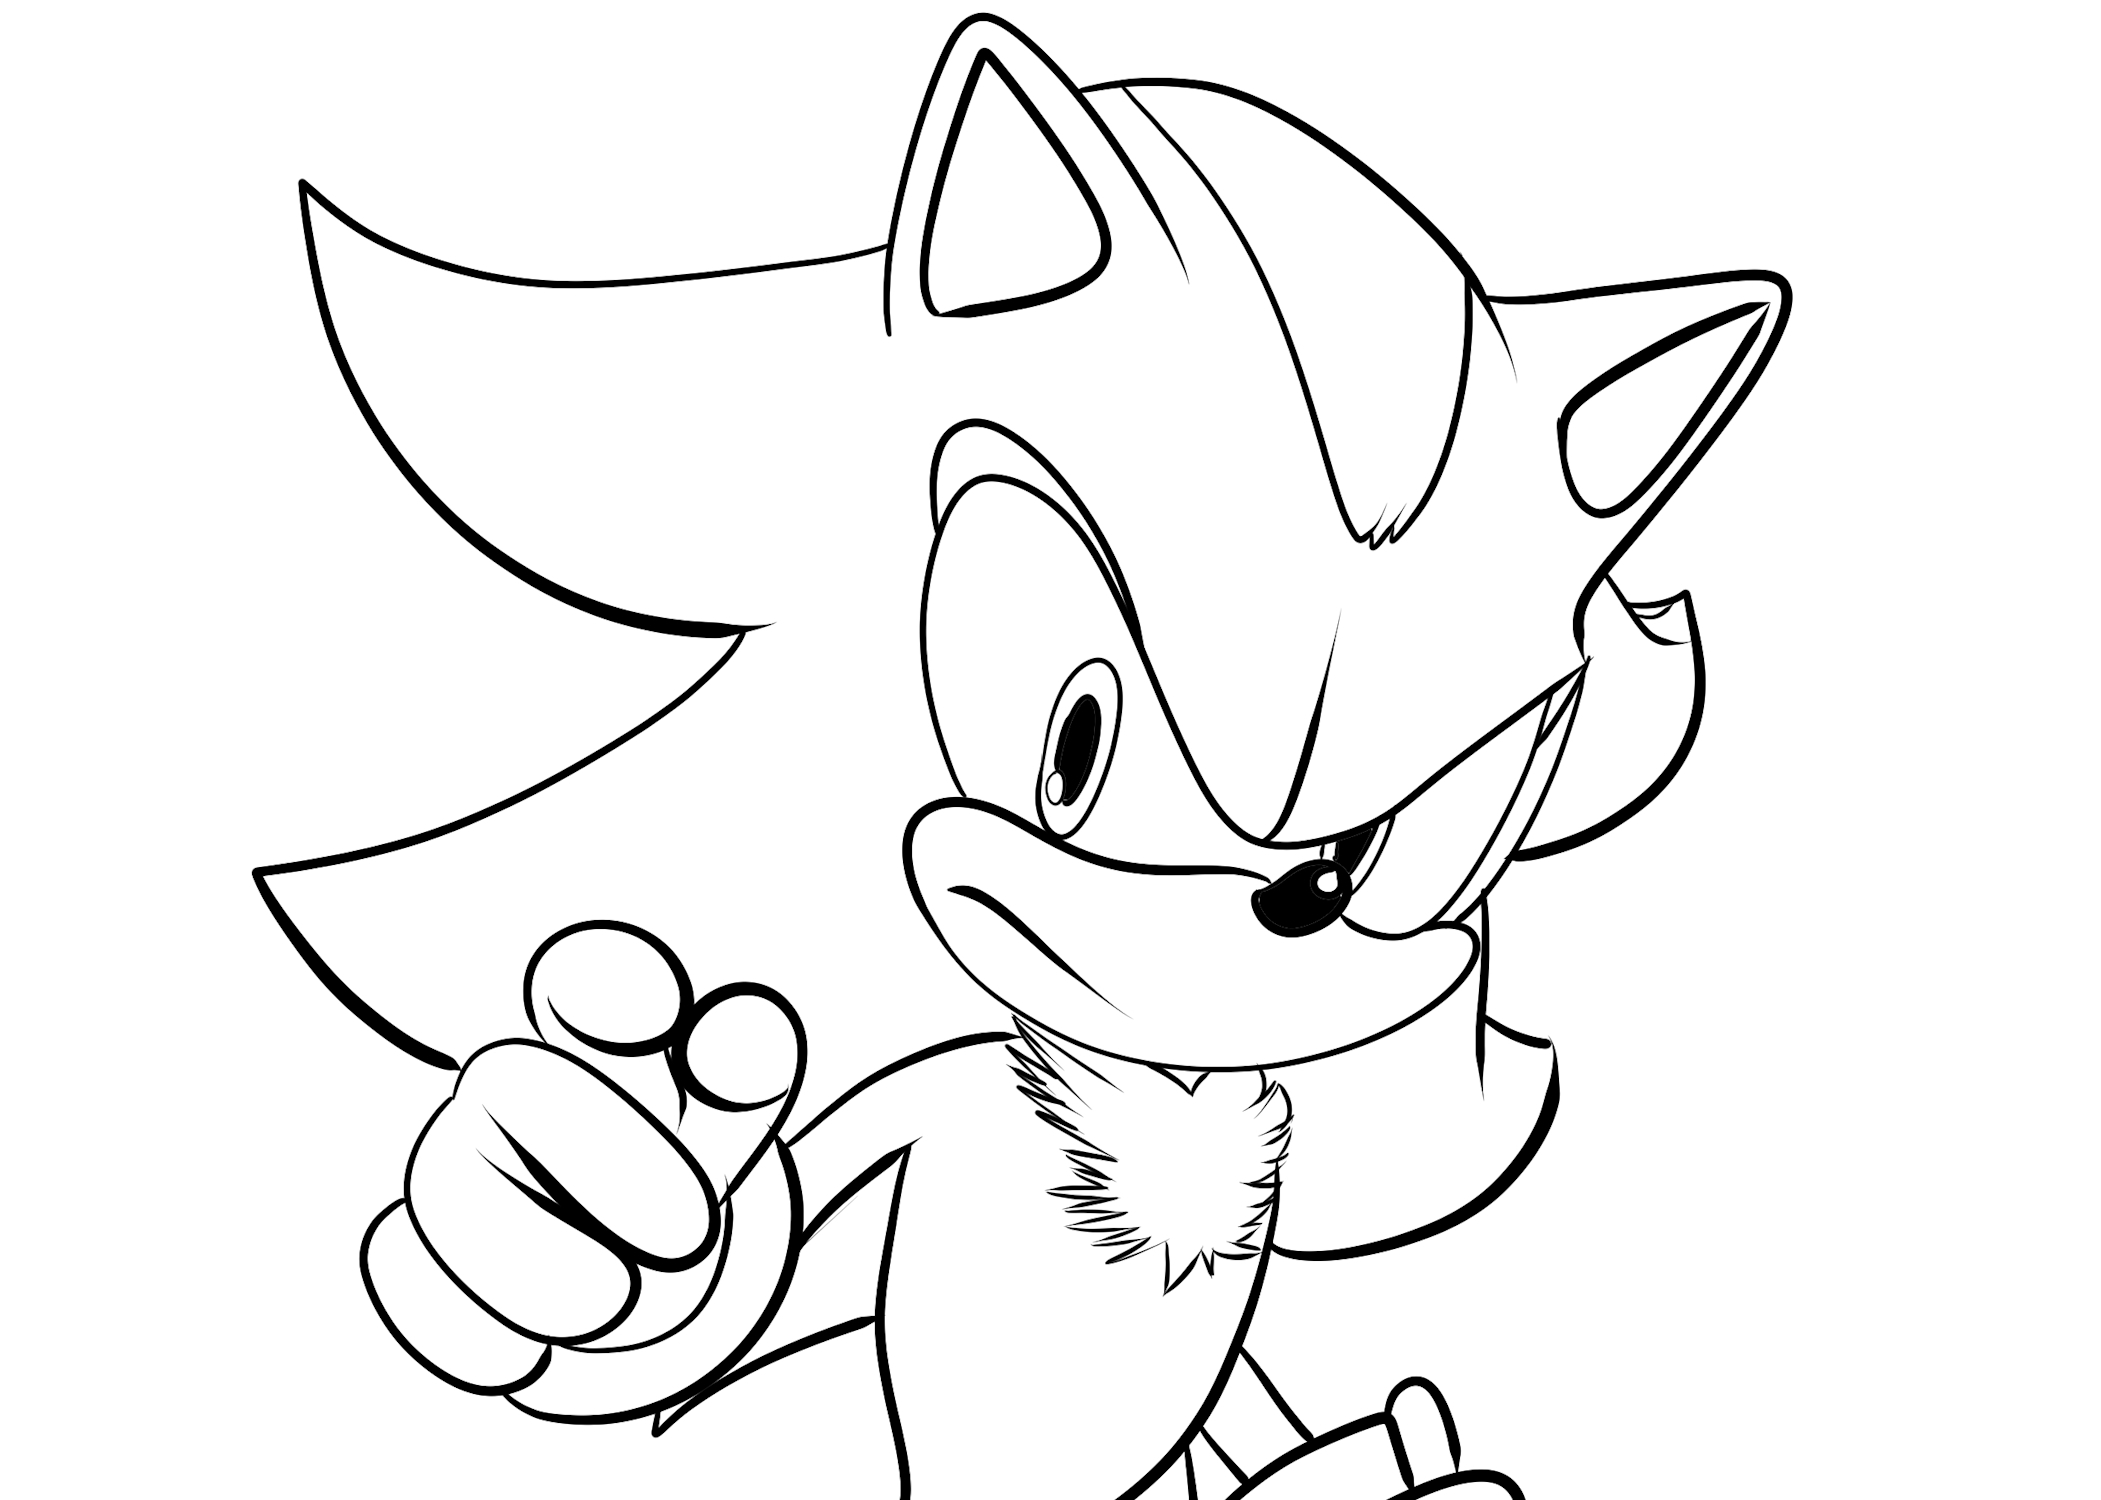 Disegni da colorare di Shadow the Hedgehog, il personaggio di Sonic